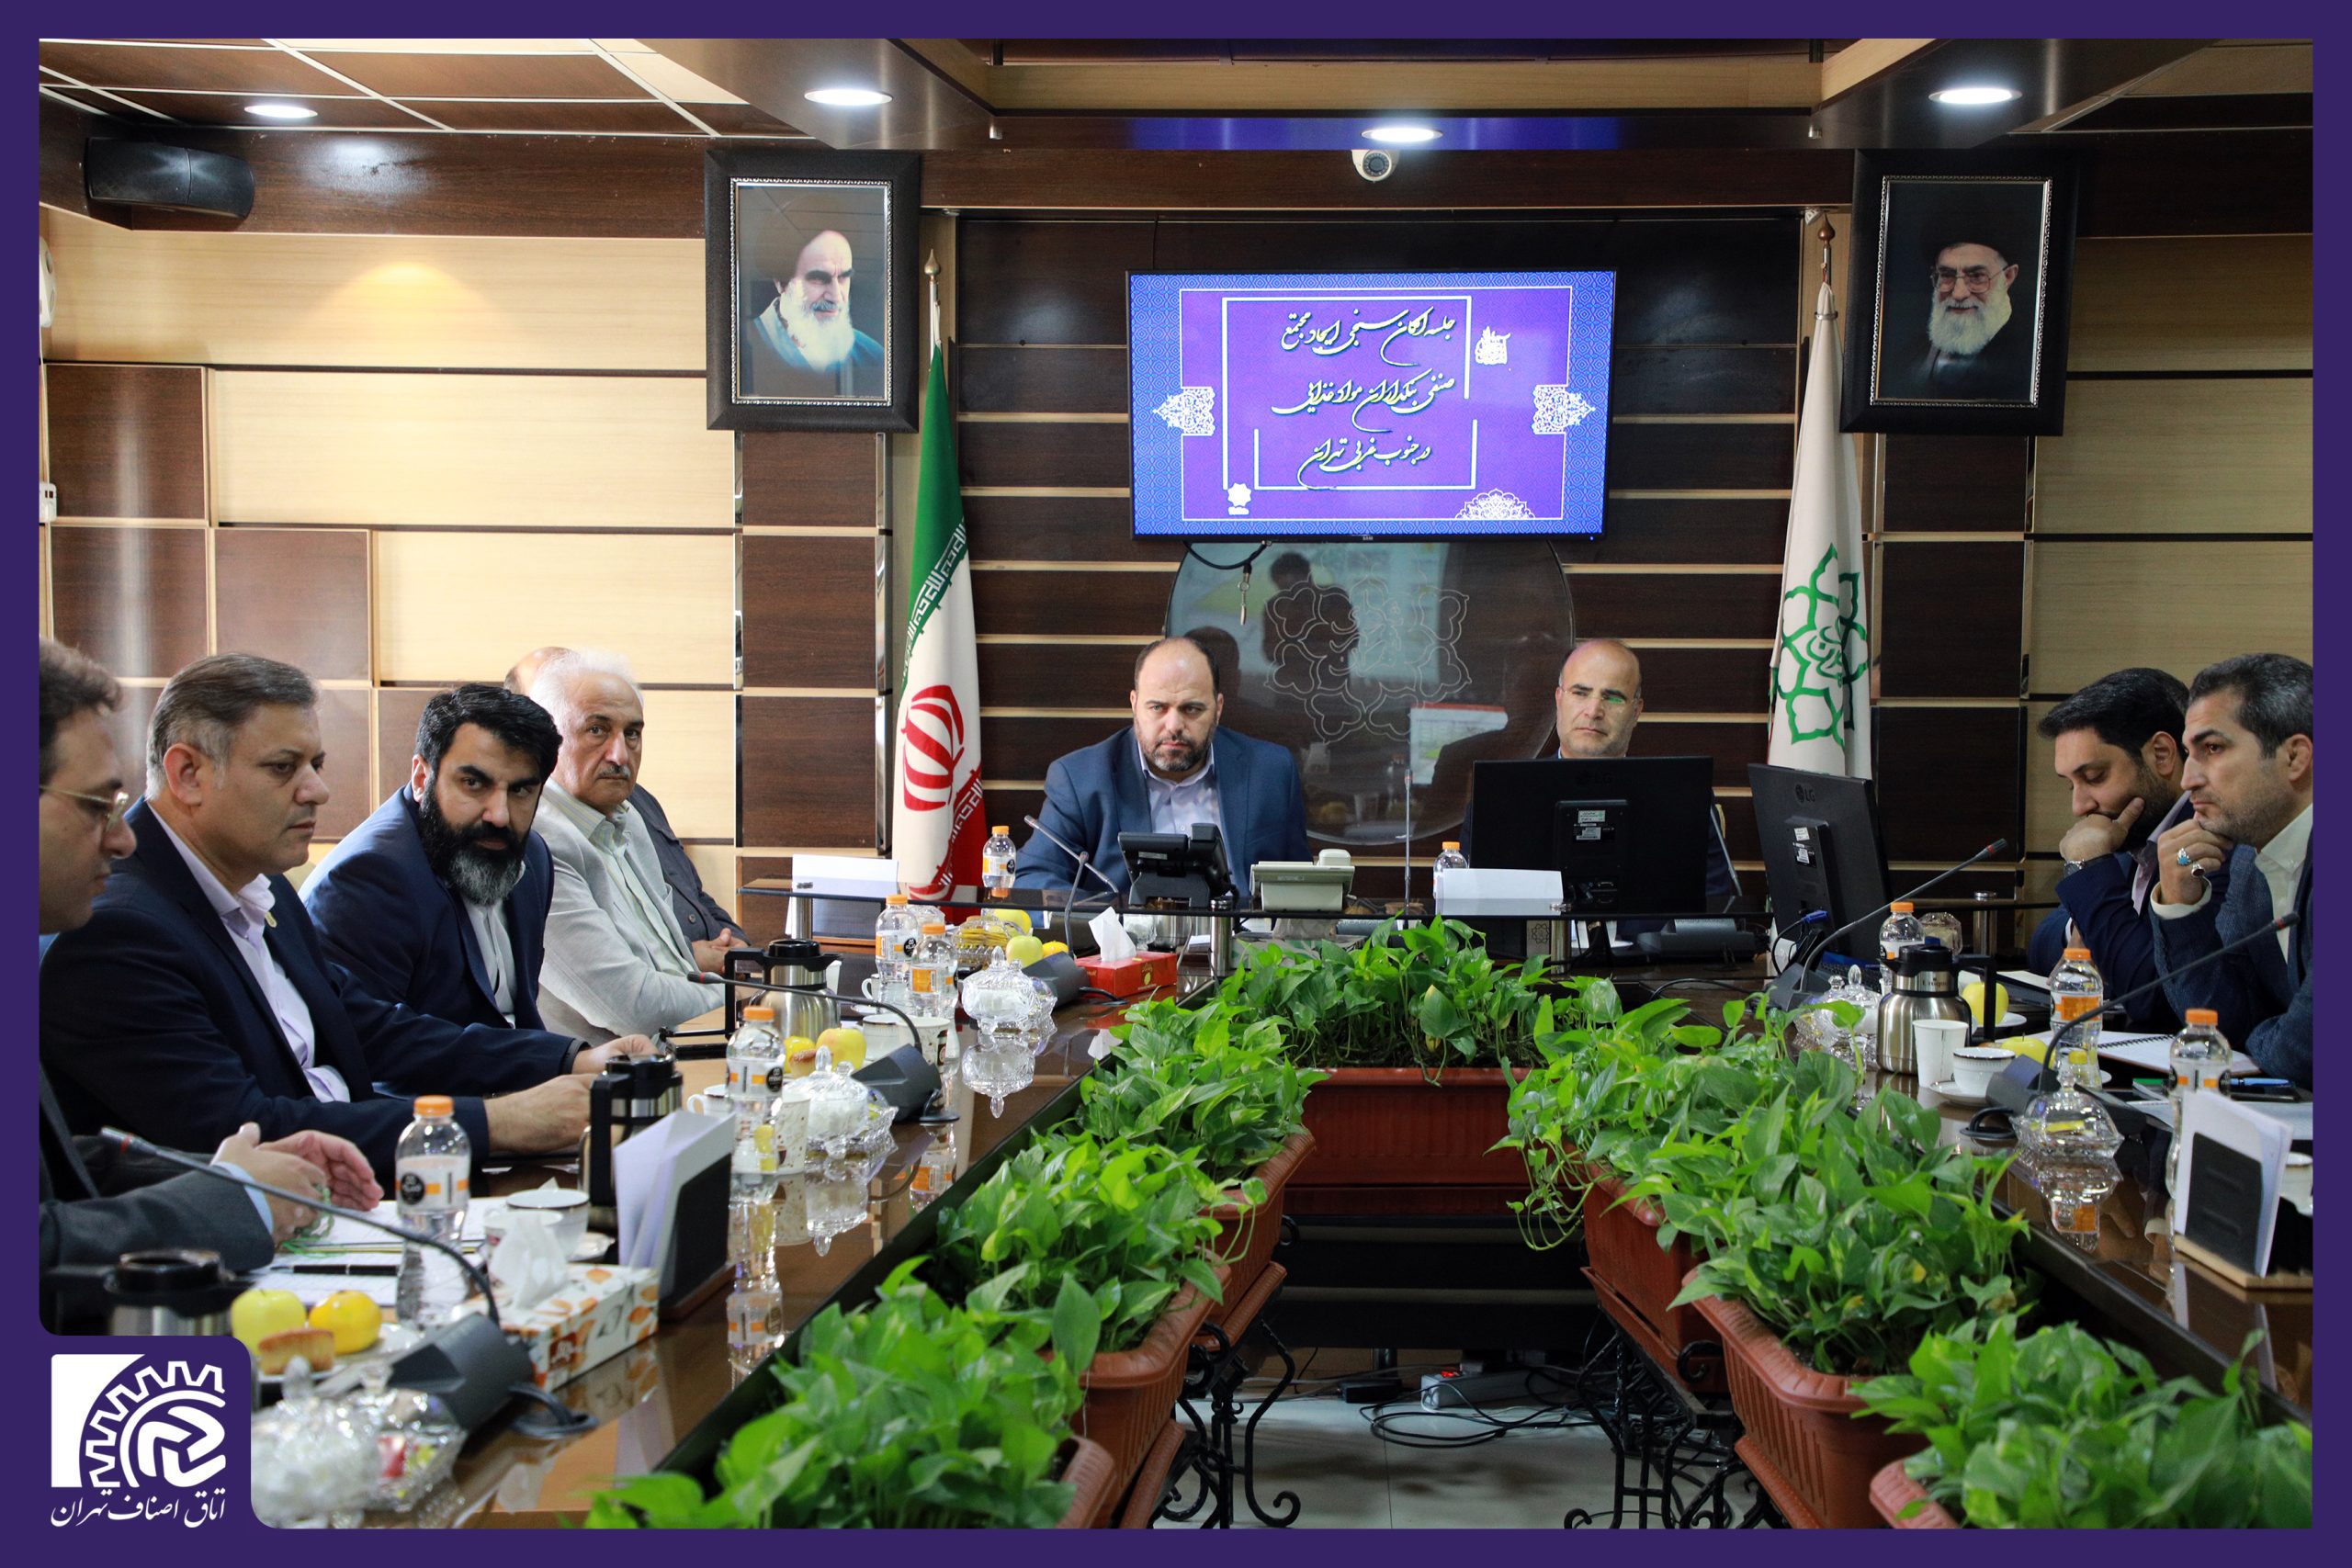 جلسه مشترک نایب رئیس اتاق اصناف تهران با مدیرعامل شرکت ساماندهی مشاغل شهر تهران و شهردار منطقه۱۹